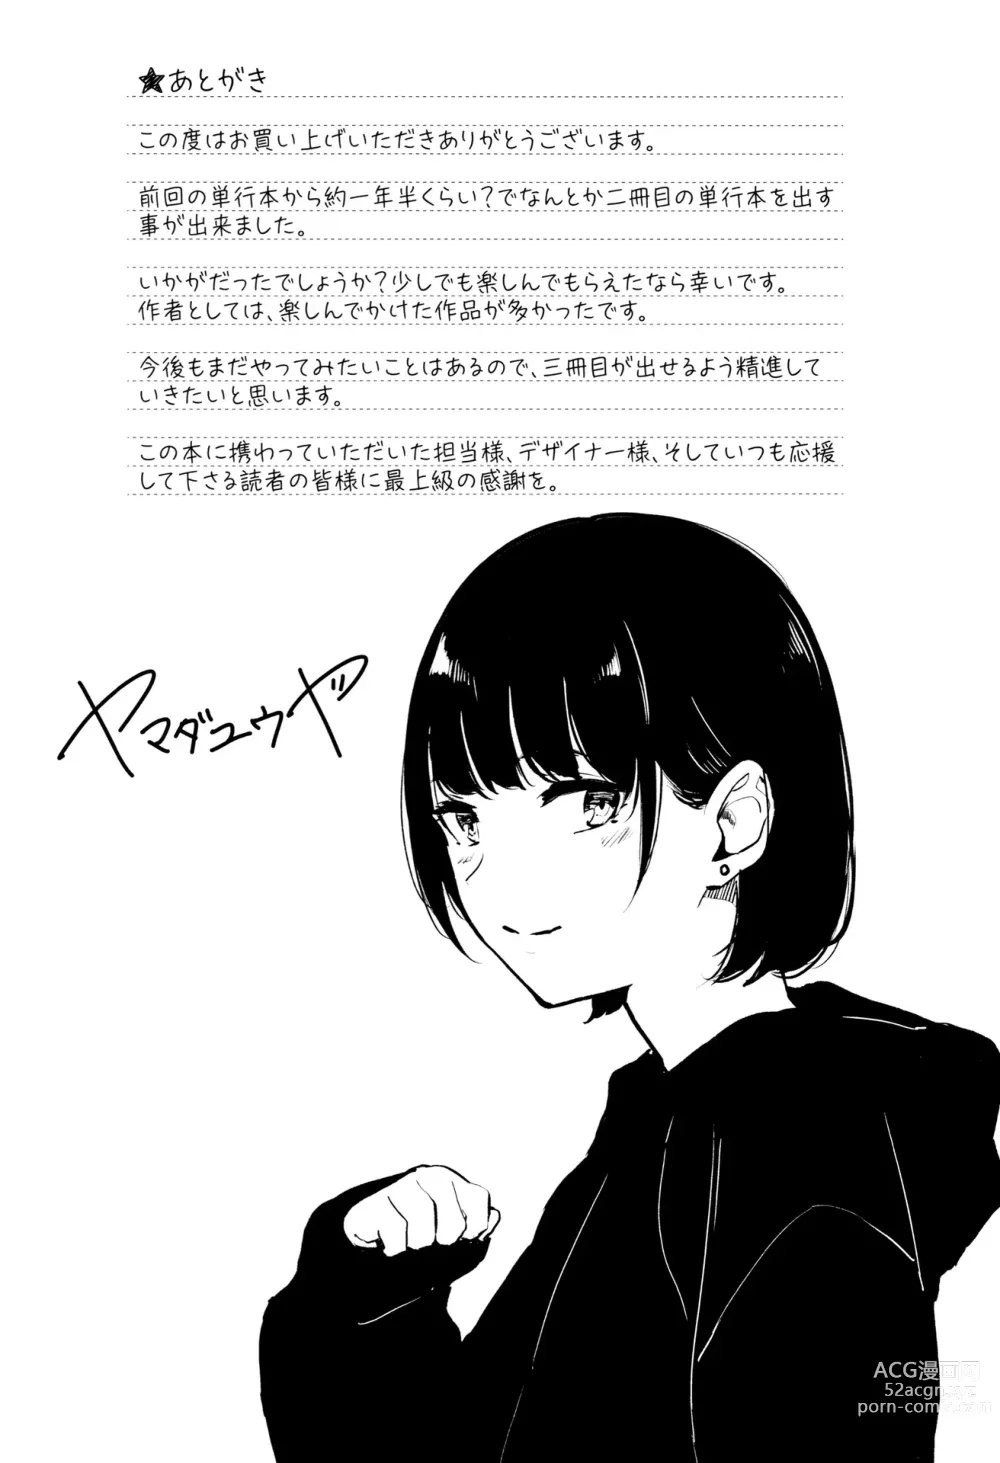 Page 195 of manga Kannou Biyori (uncensored)